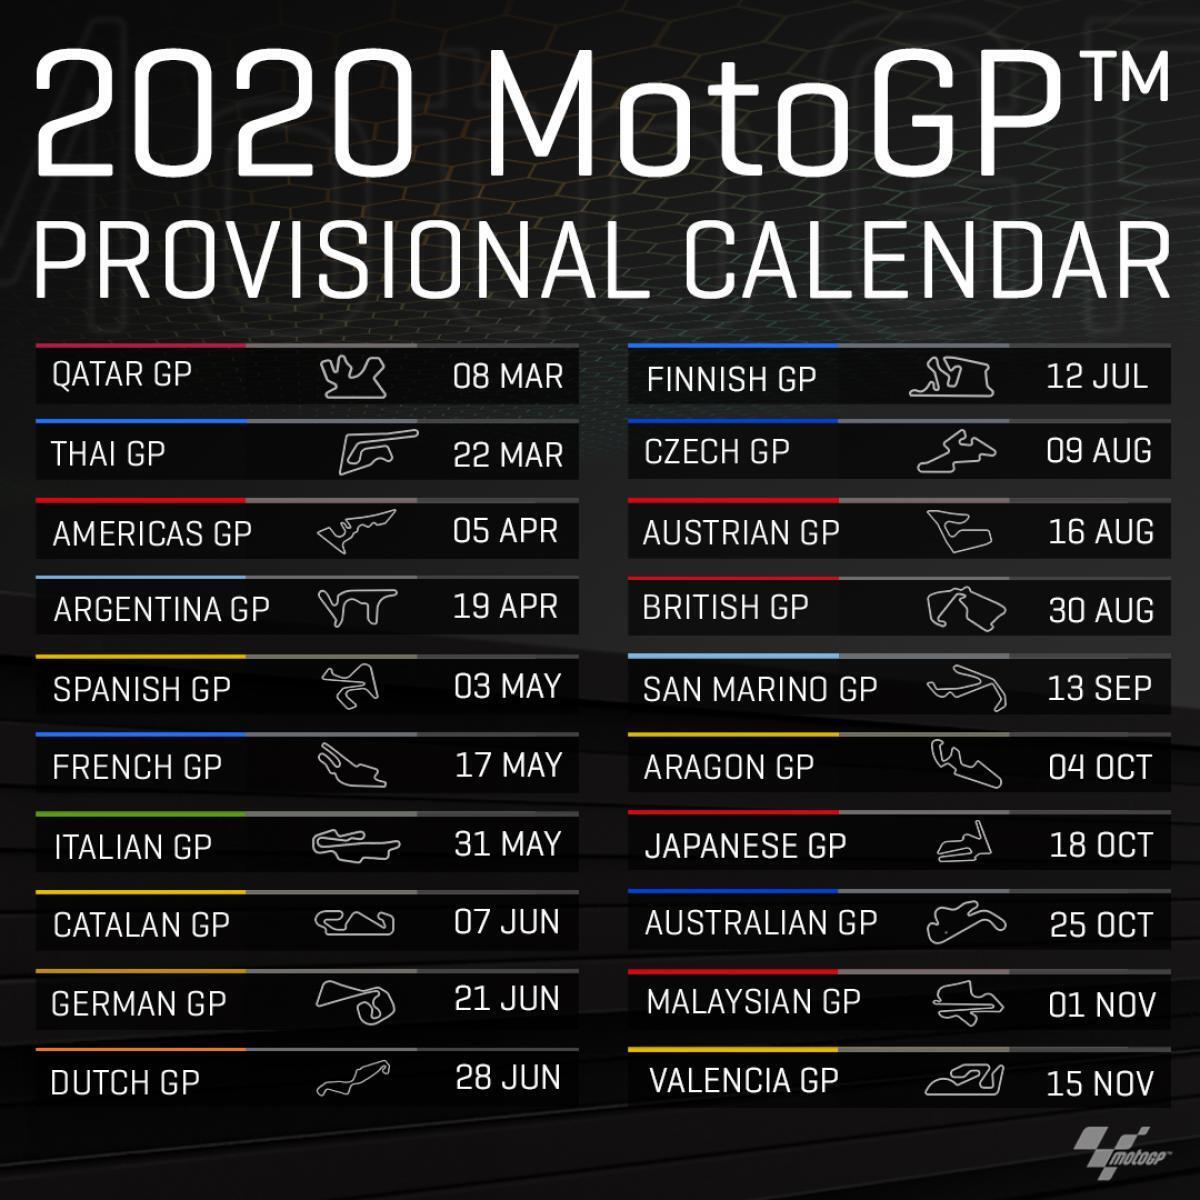 ประกาศผังการแข่งขัน MotoGP ฤดูกาล 2020 แล้ว ไทยถูกเปลี่ยนมาเป็นสนามที่ 2 เดือนมีนาคมแทน 